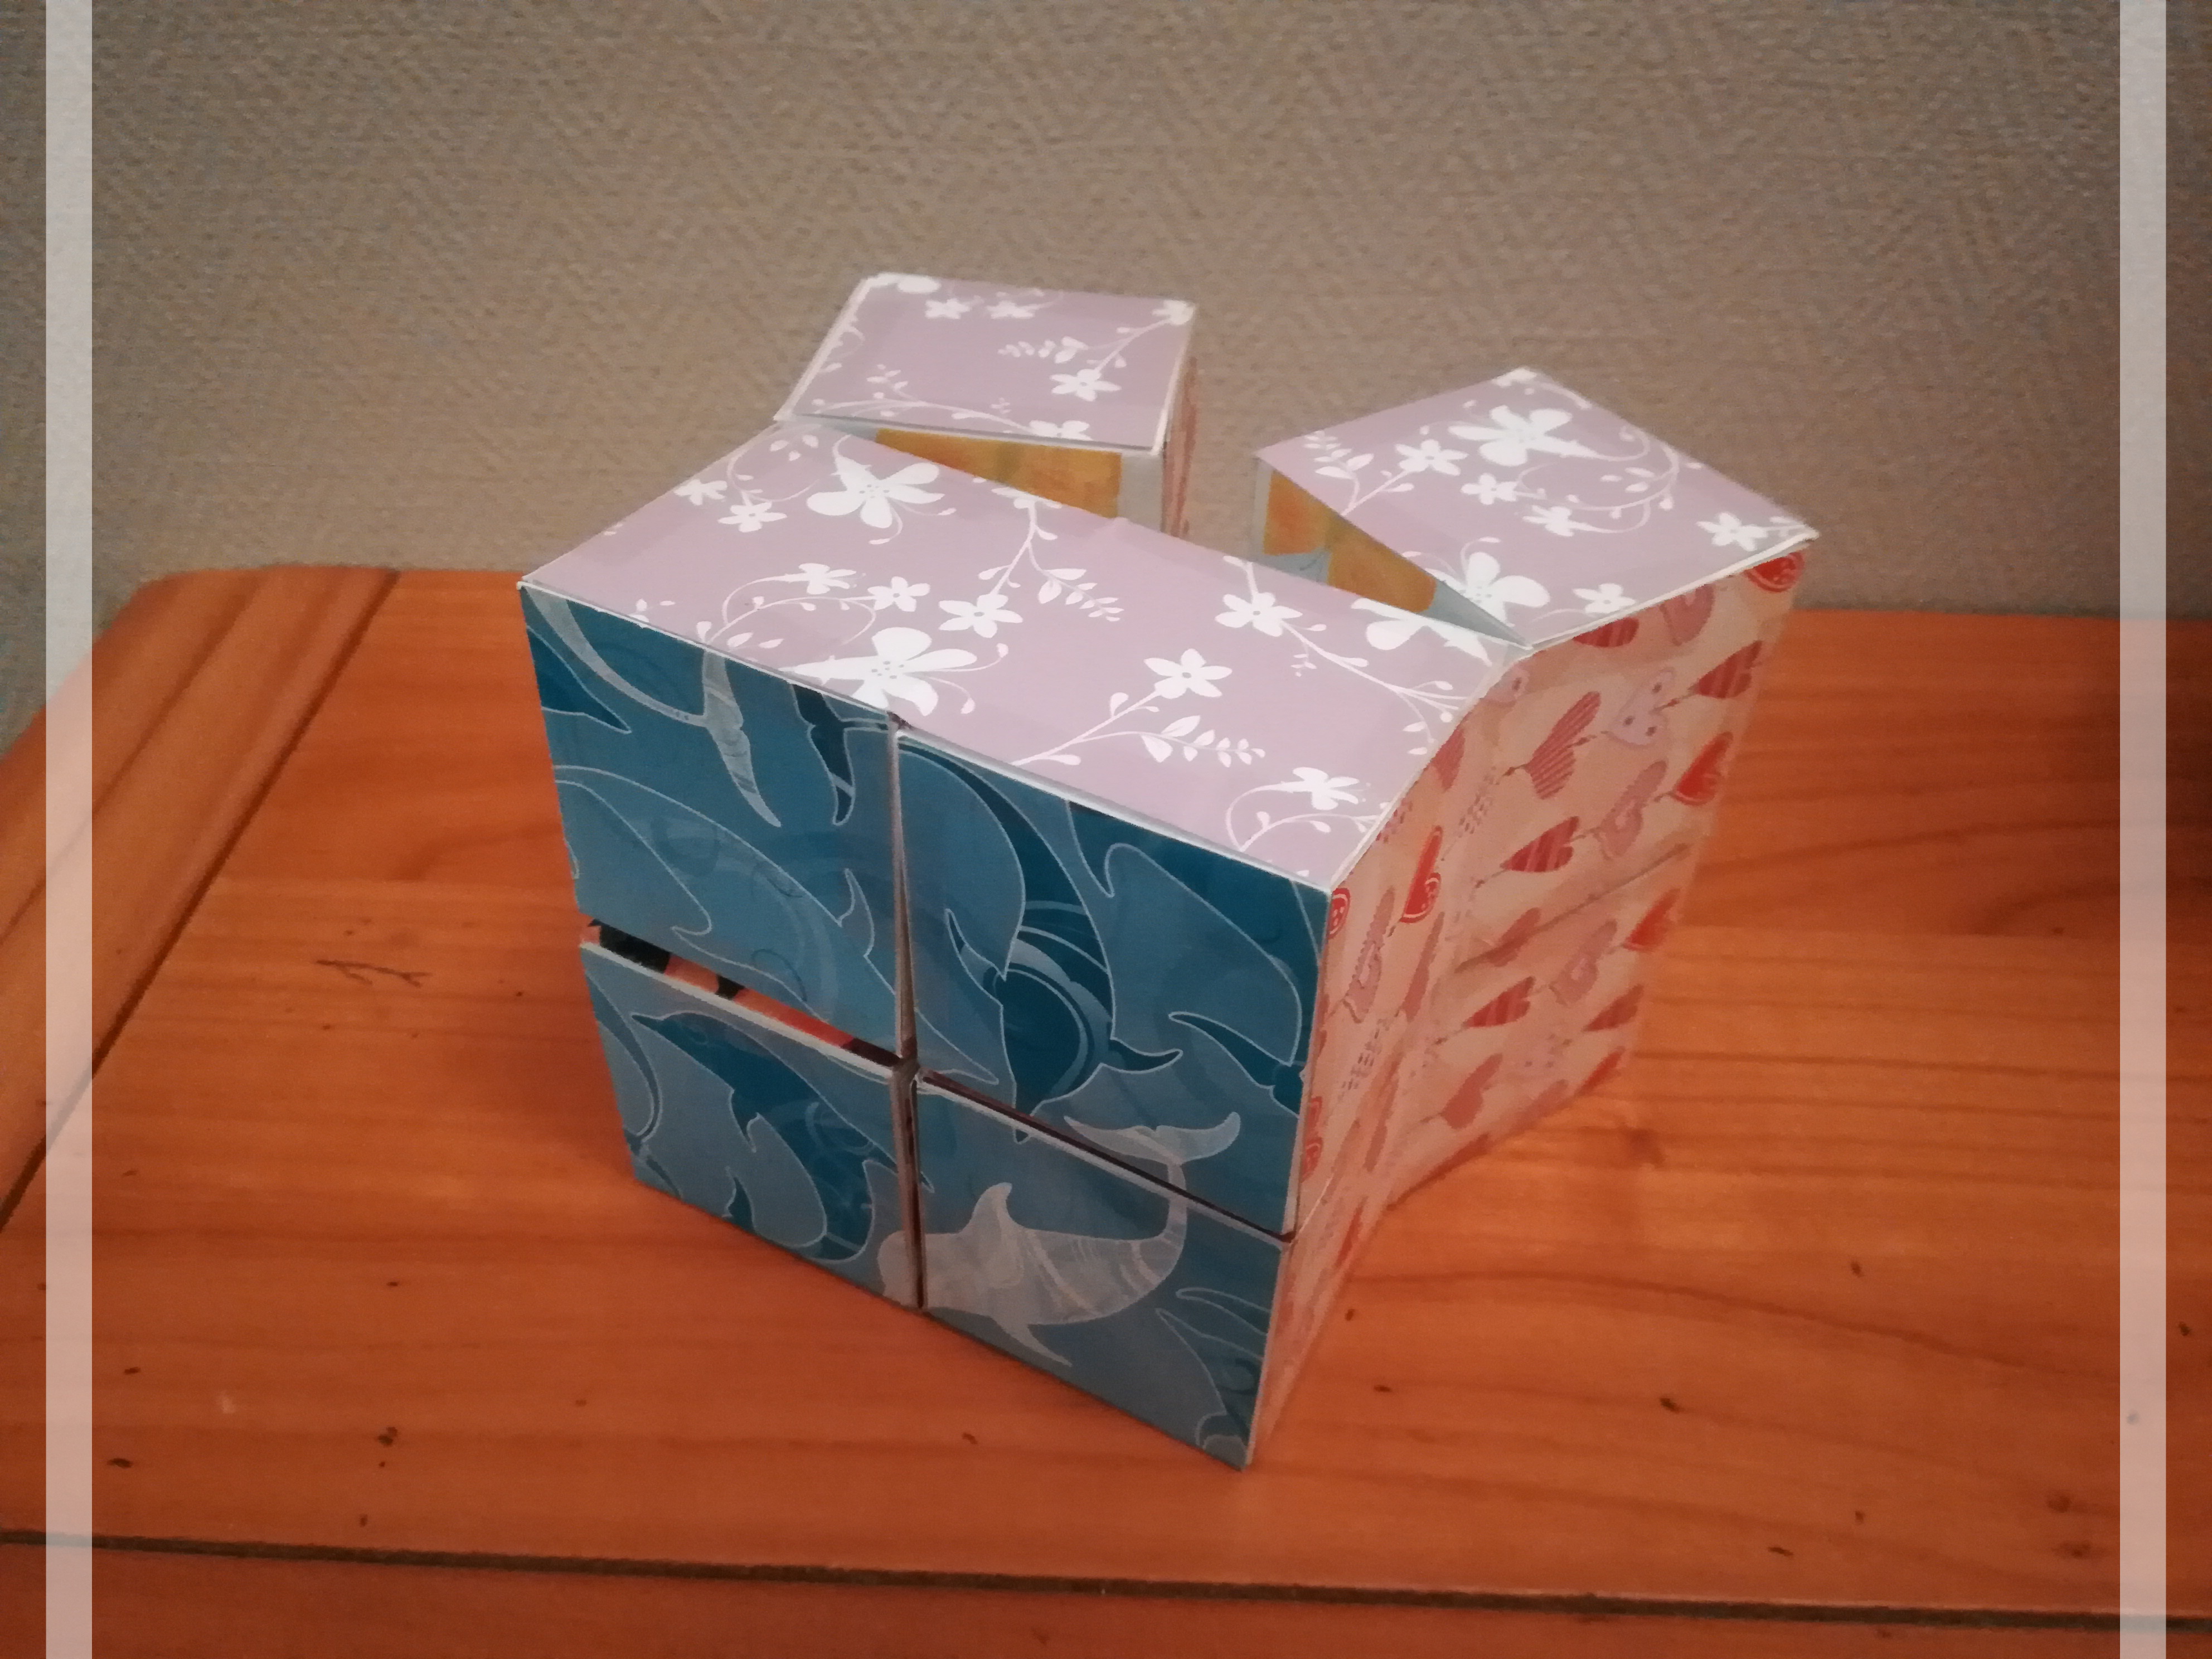 Tuto : "Le cube magique" - Les créations d'Ulane